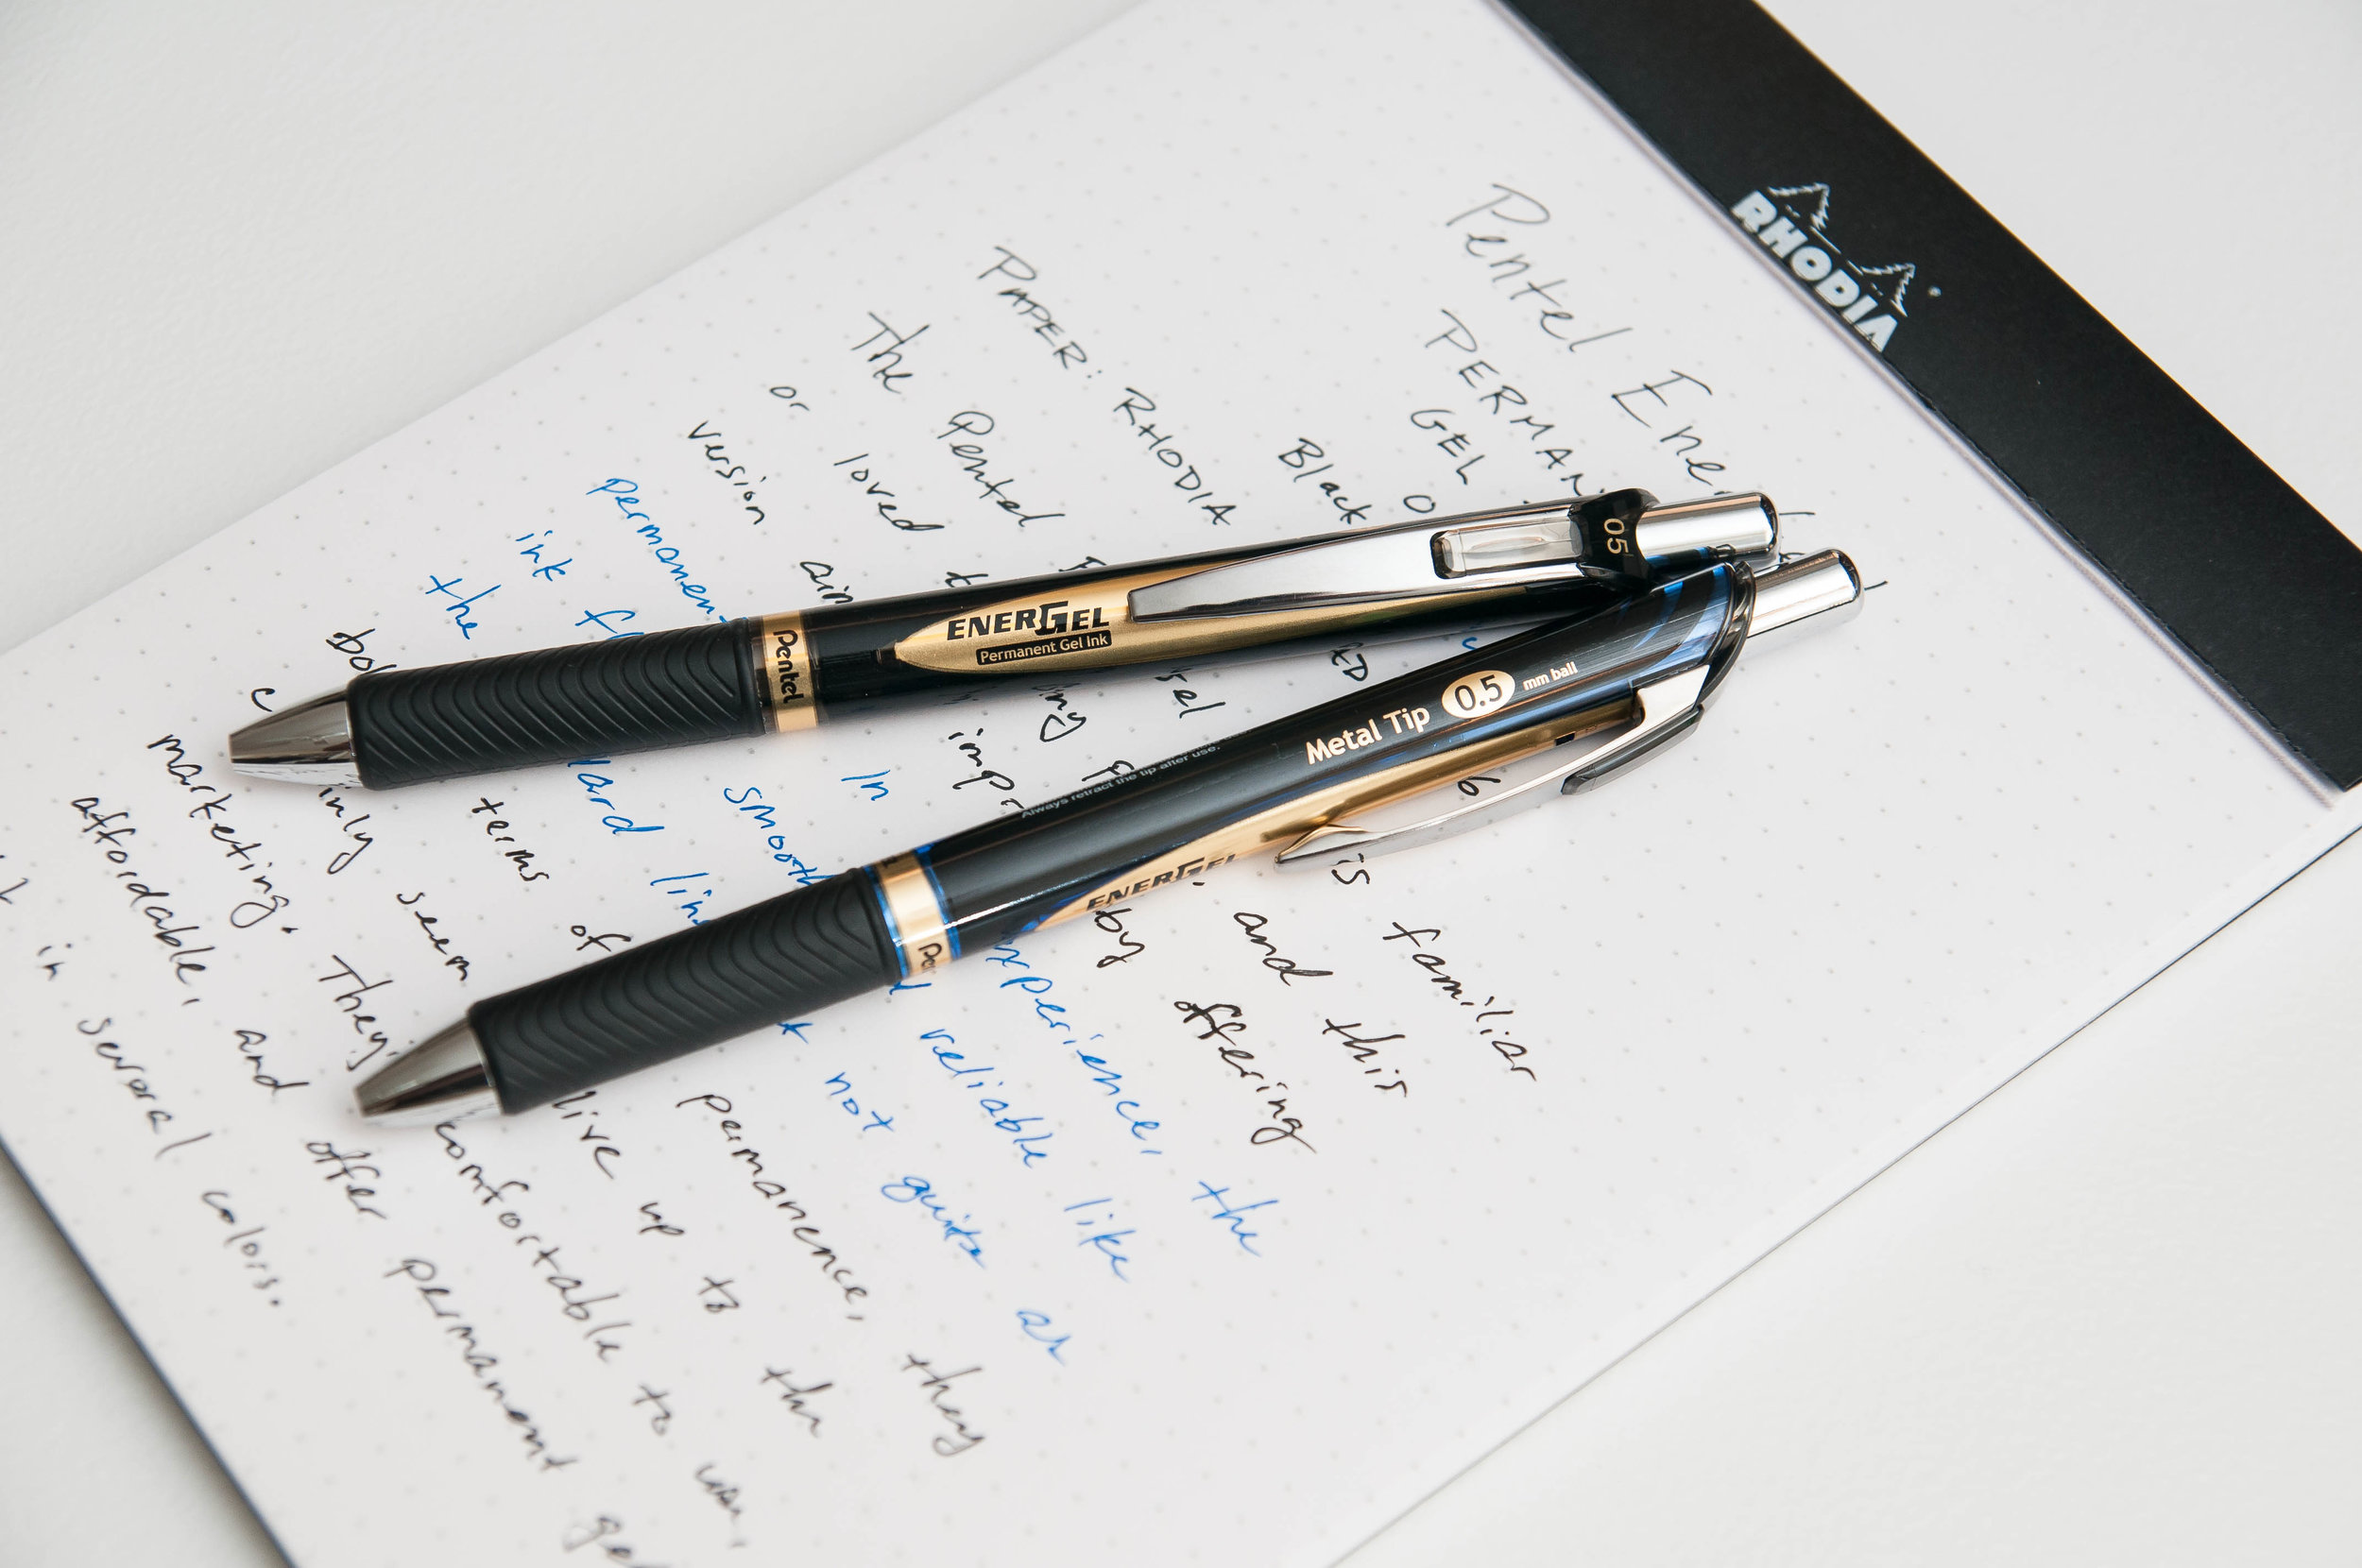 Scribble & Scribe Sketchbook with Gel Pen Set